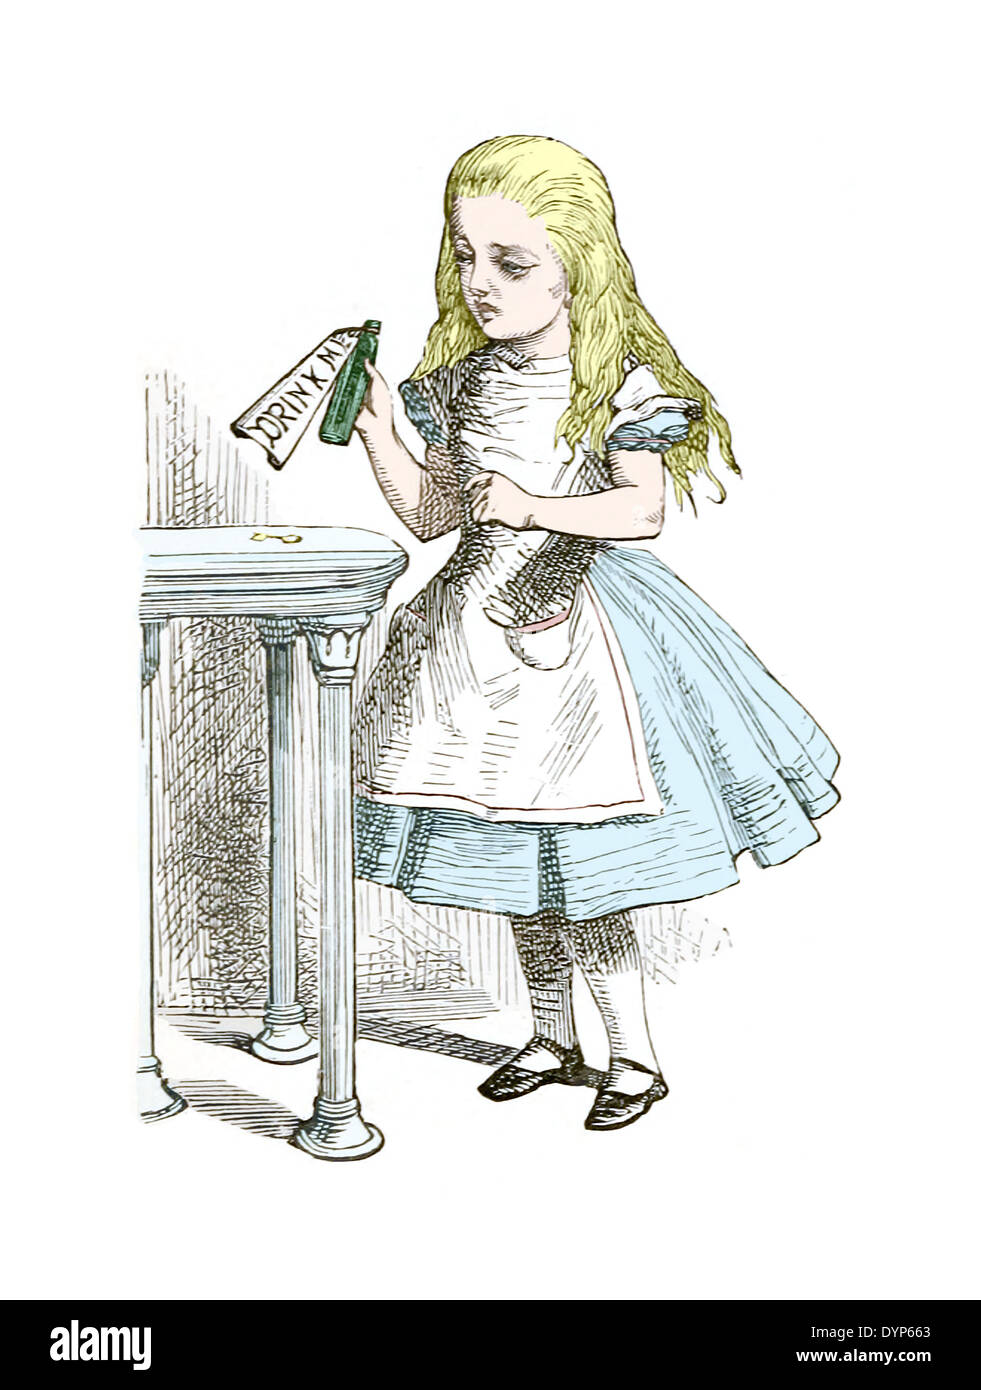 John Tenniel (1820-1914) ilustración de "Alicia en el país de las Maravillas"  de Lewis Carroll publicado por primera vez en 1865. ME bebe botella  Fotografía de stock - Alamy